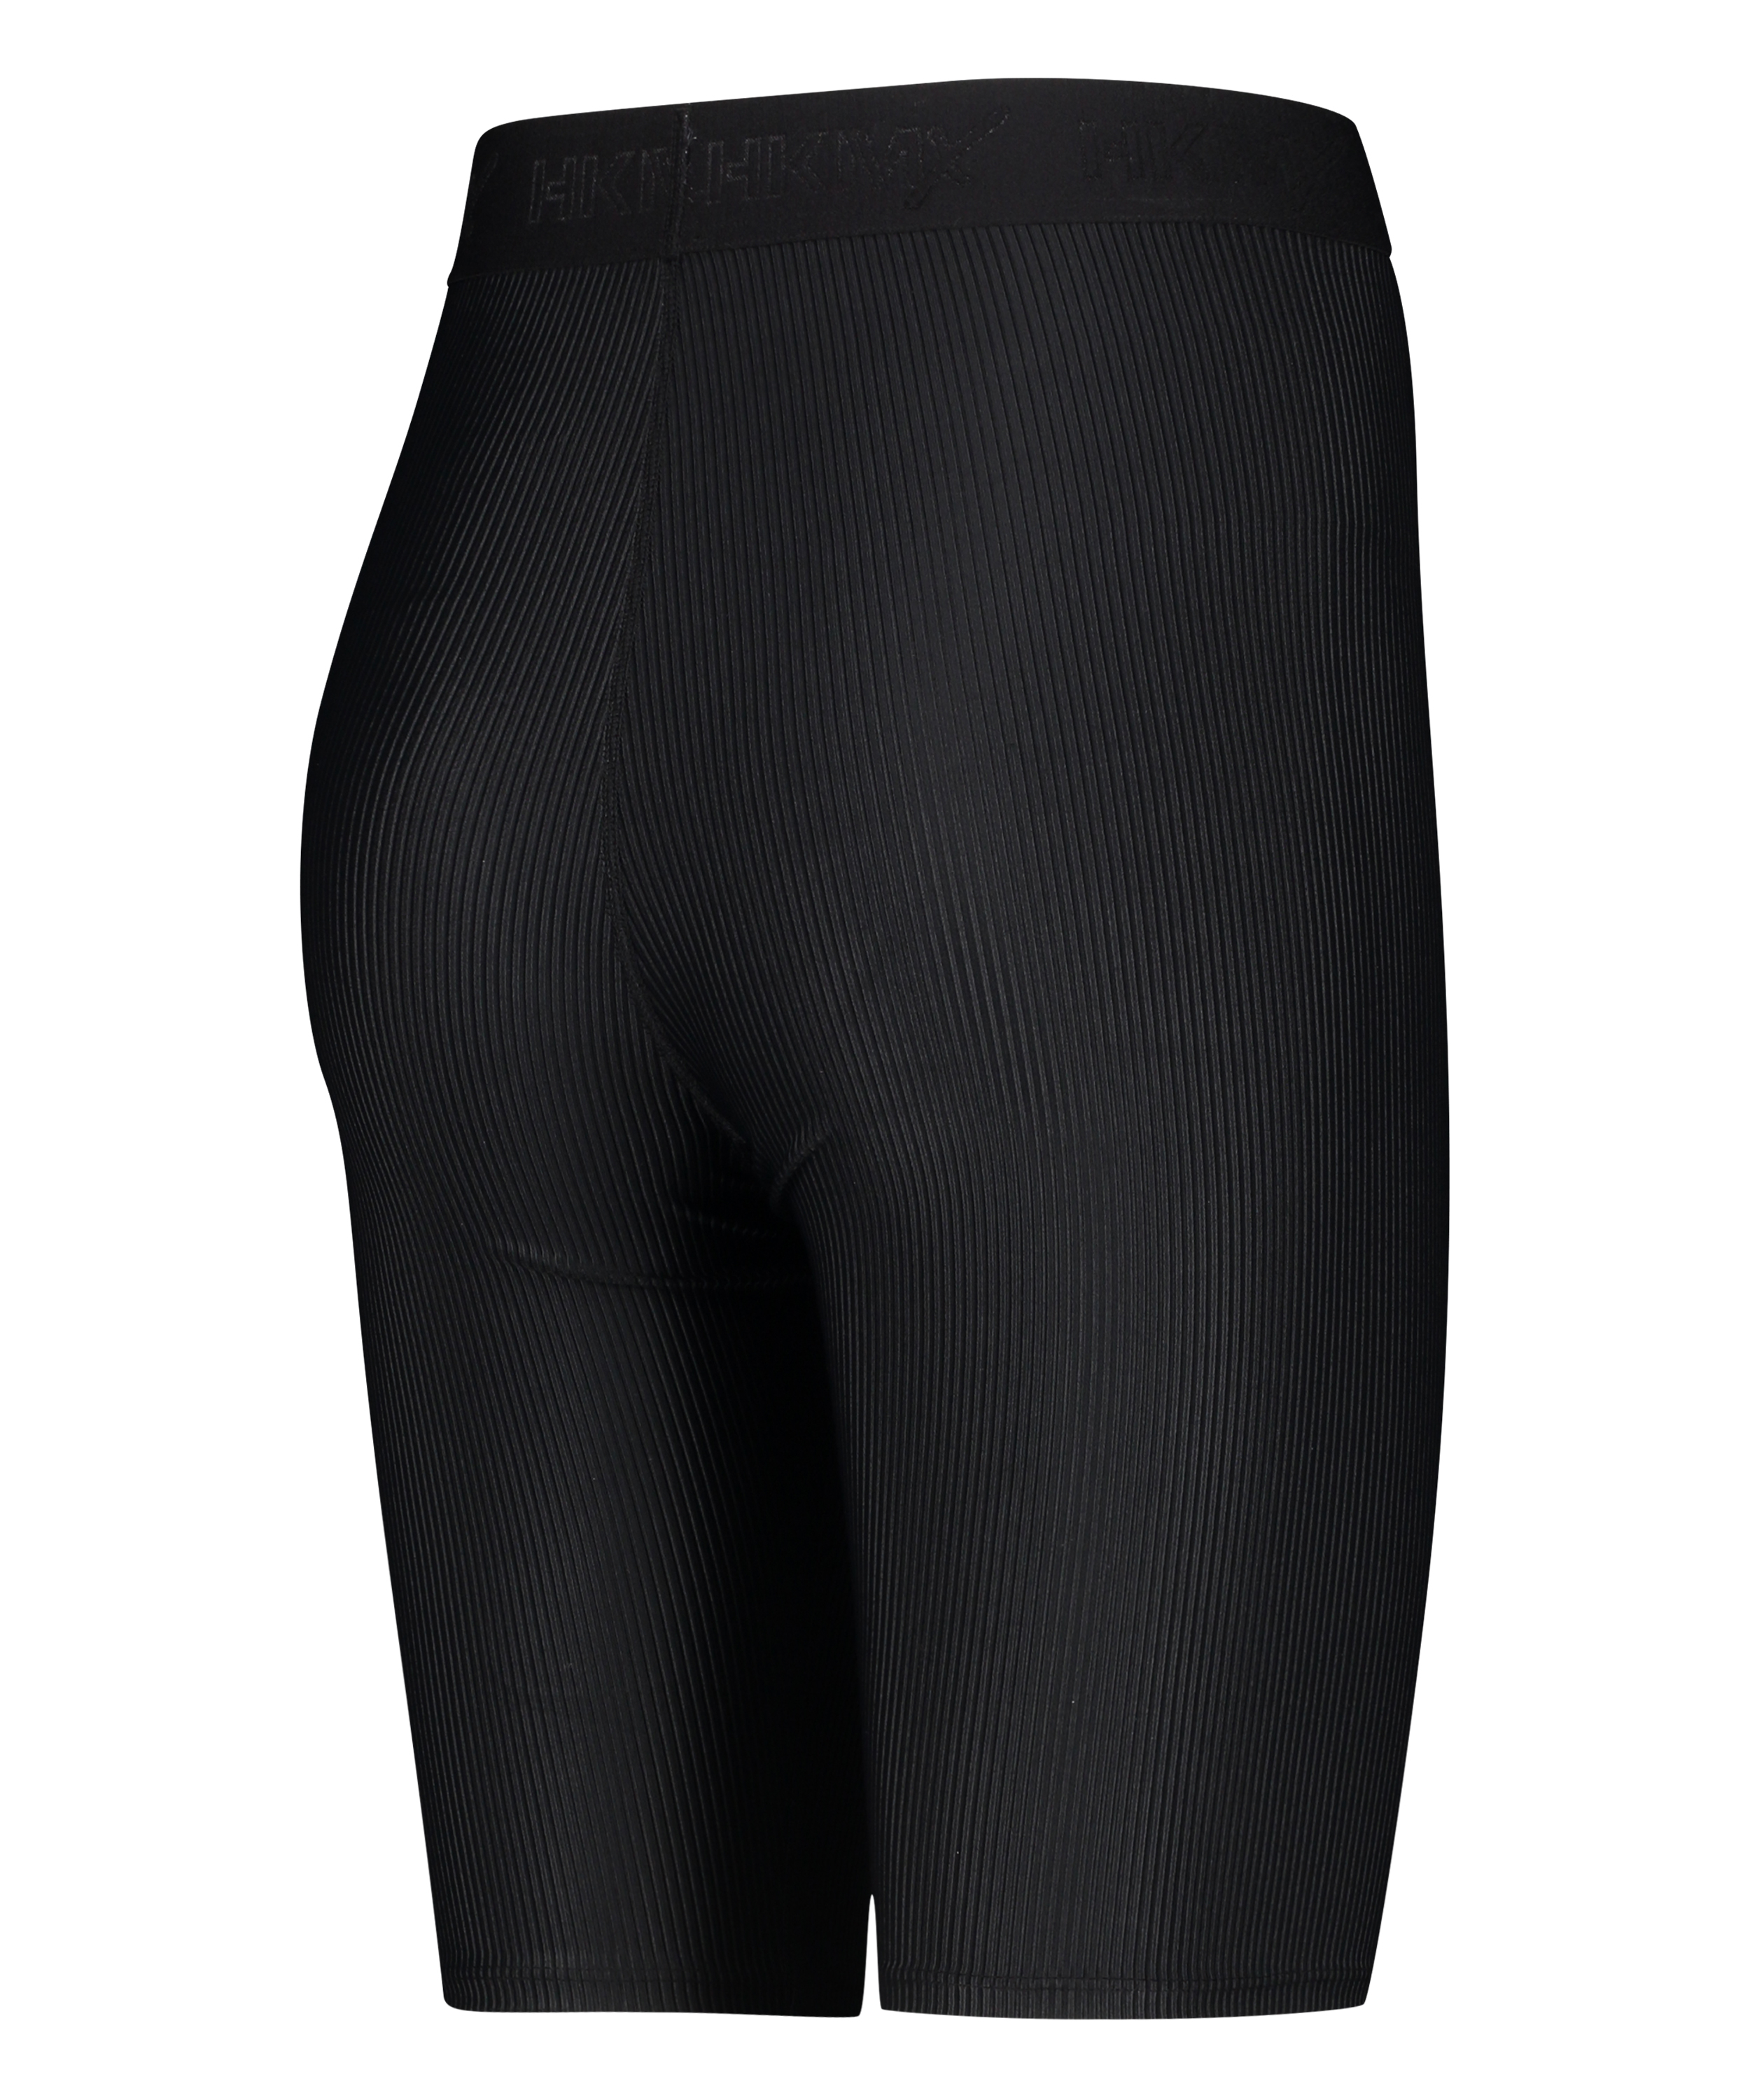 HKMX high waisted bike shorts level 3, Black, main